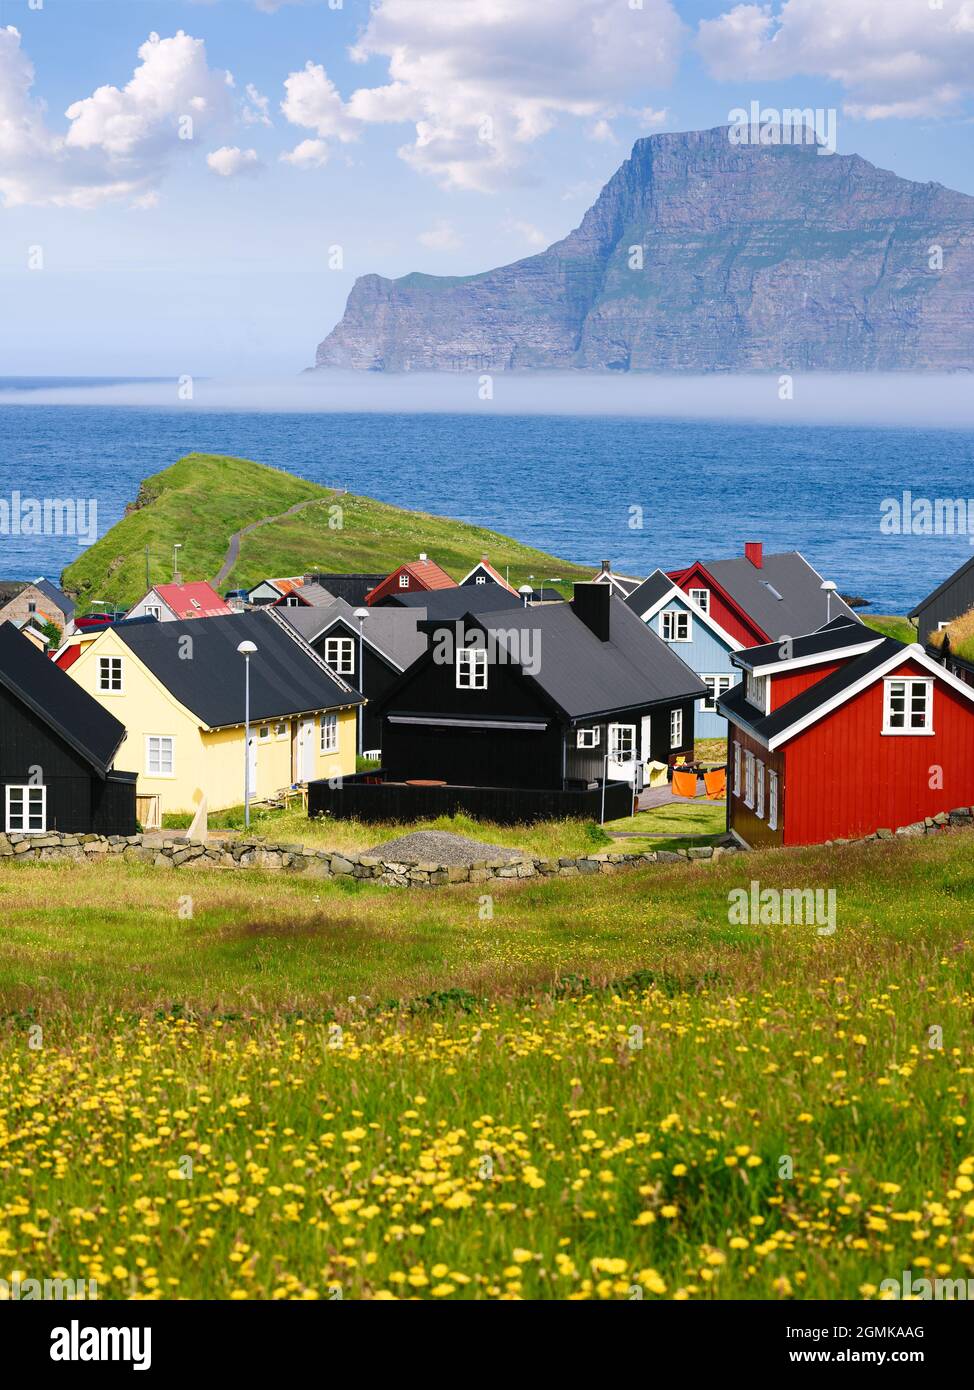 Village de Gjogv avec vue sur l'Atlantique Nord et les îles environnantes sur Eysturoy, îles Féroé Banque D'Images